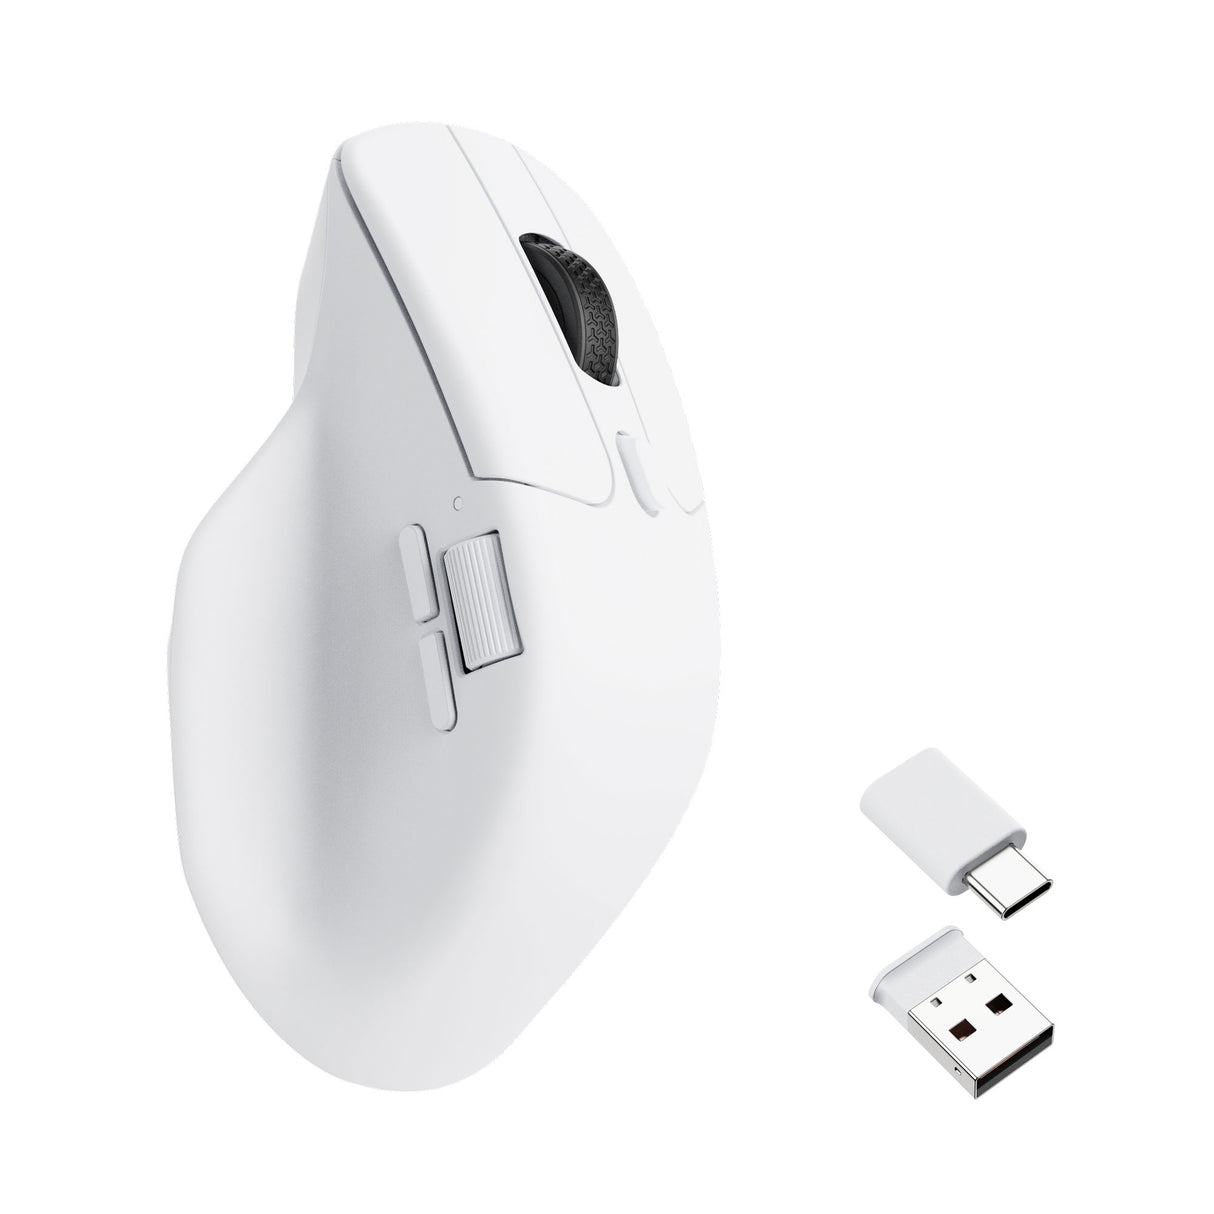 Keychron M6 Wireless Mouse - White